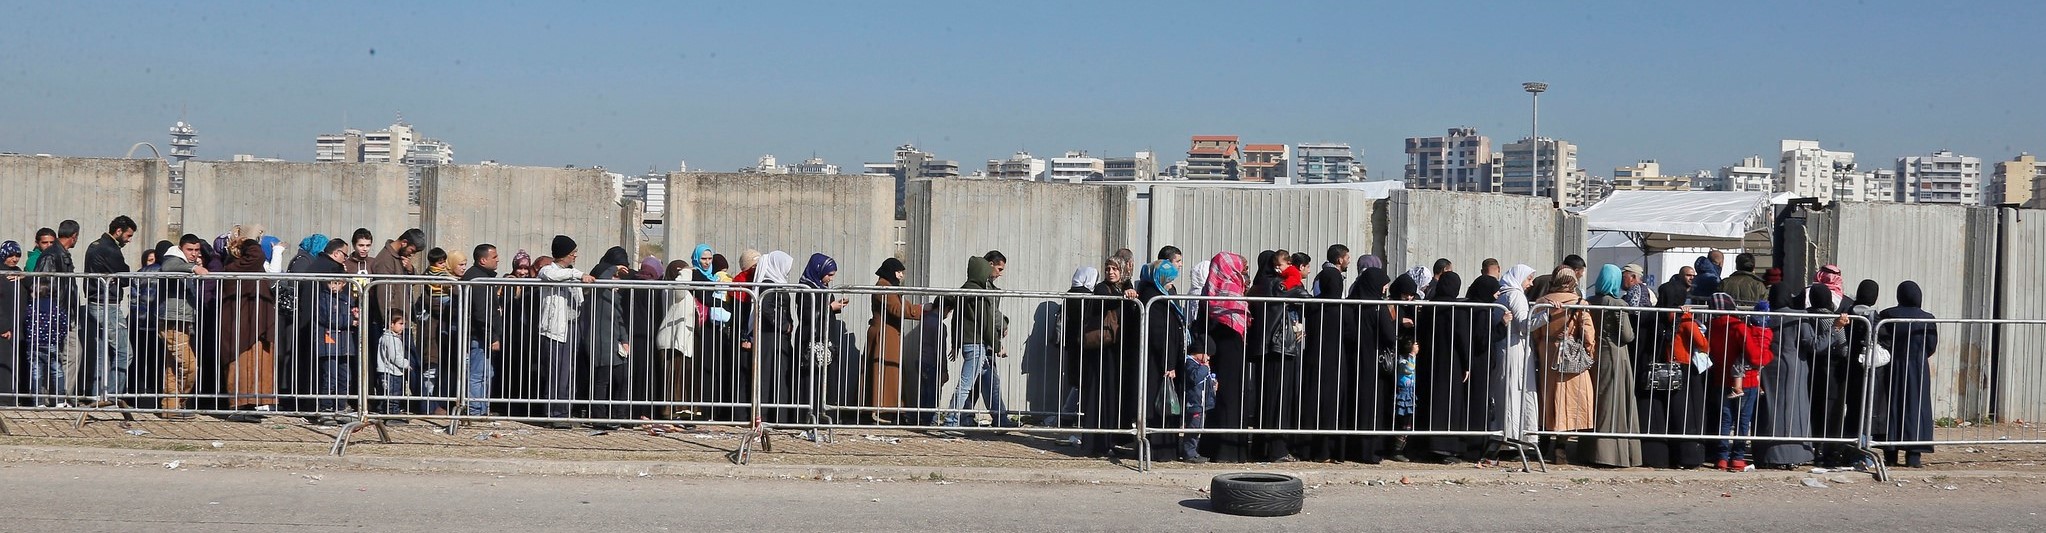 Ciudades de refugio: un enfoque urbano para el desafío del desplazamiento forzado